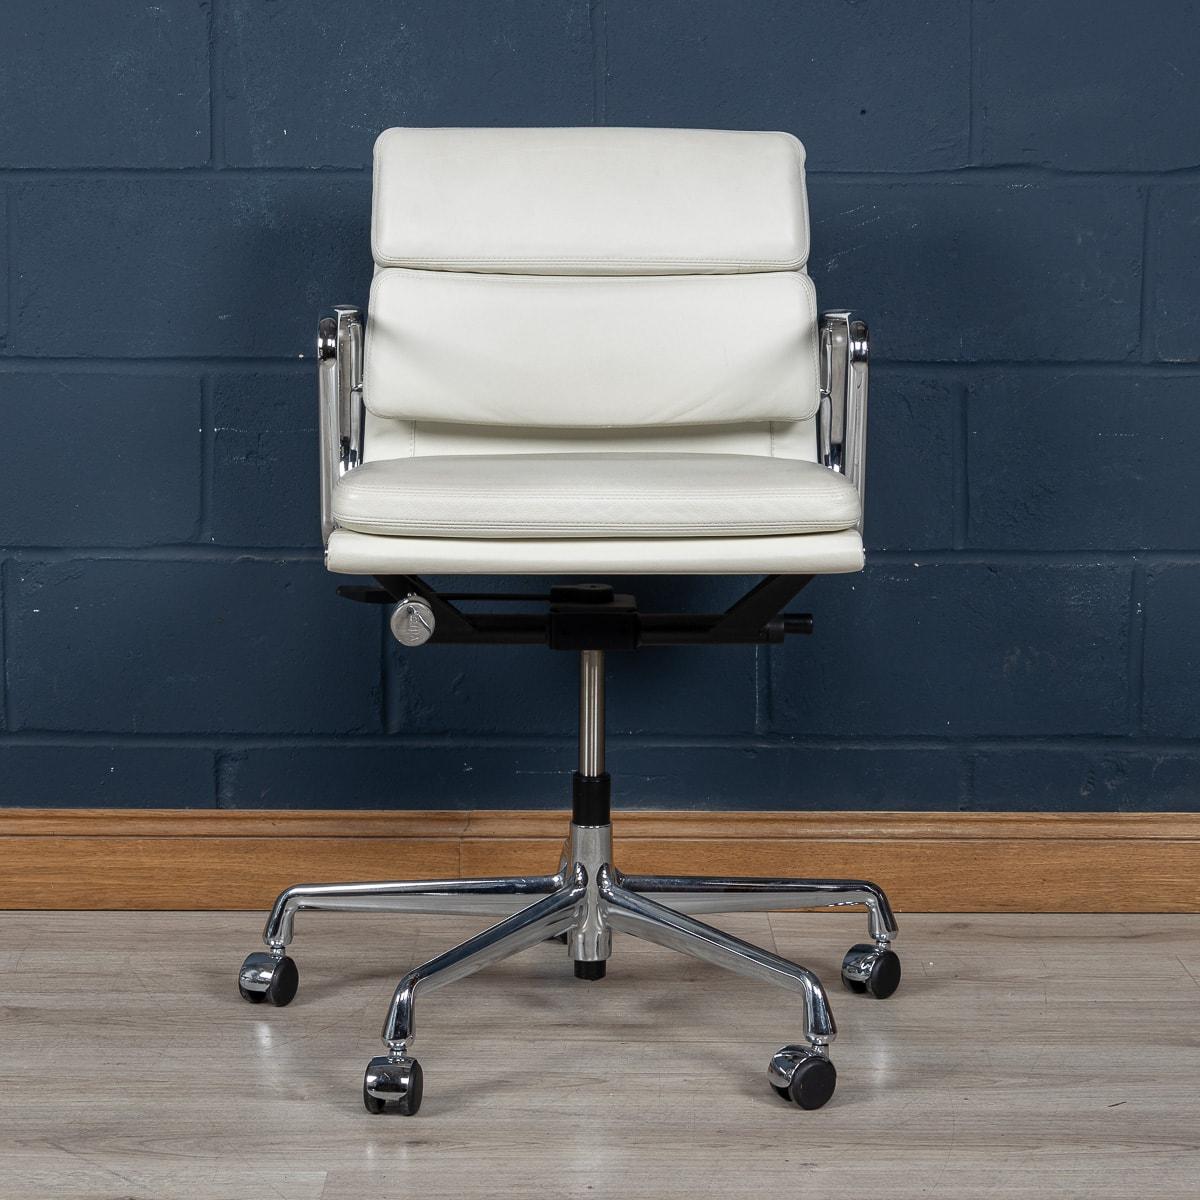 Une superbe chaise Eames de Vitra, de fabrication récente, recouverte d'un délicieux cuir blanc 